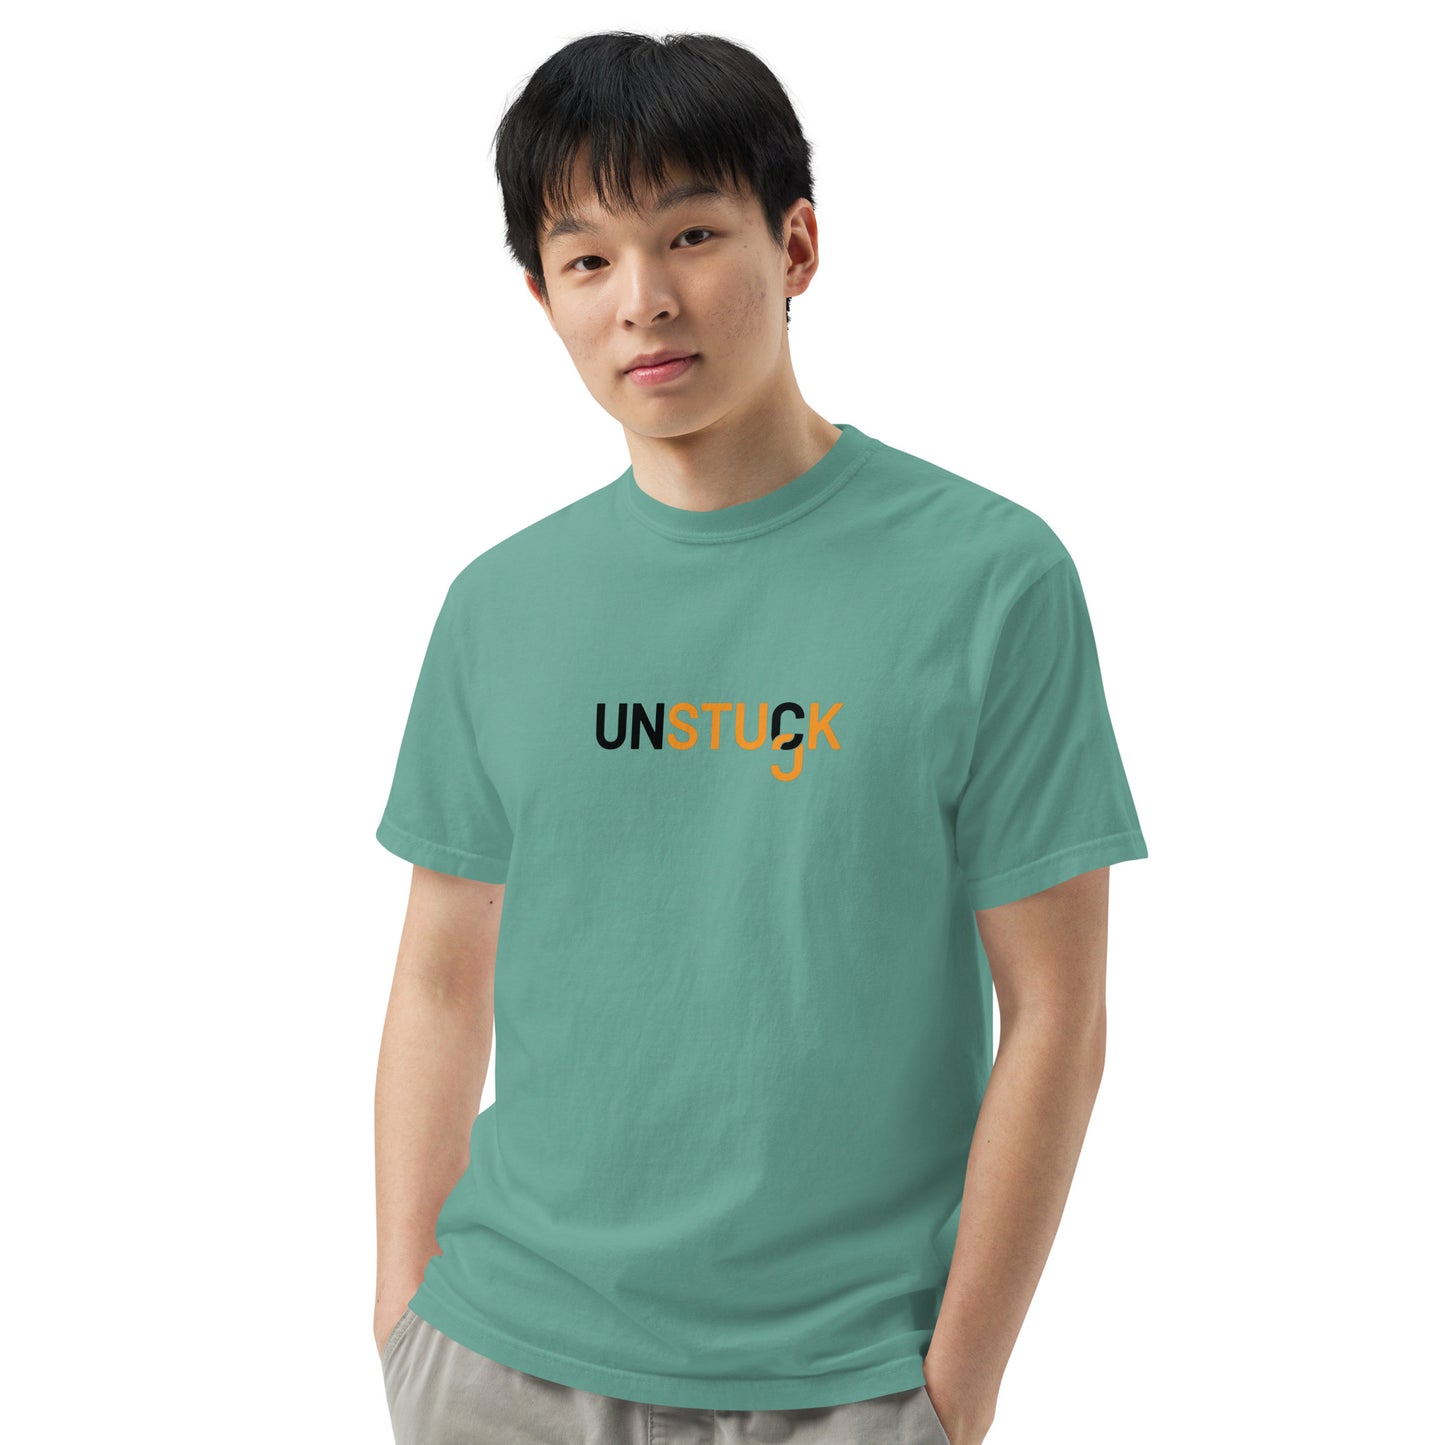 Unstuck T-shirt